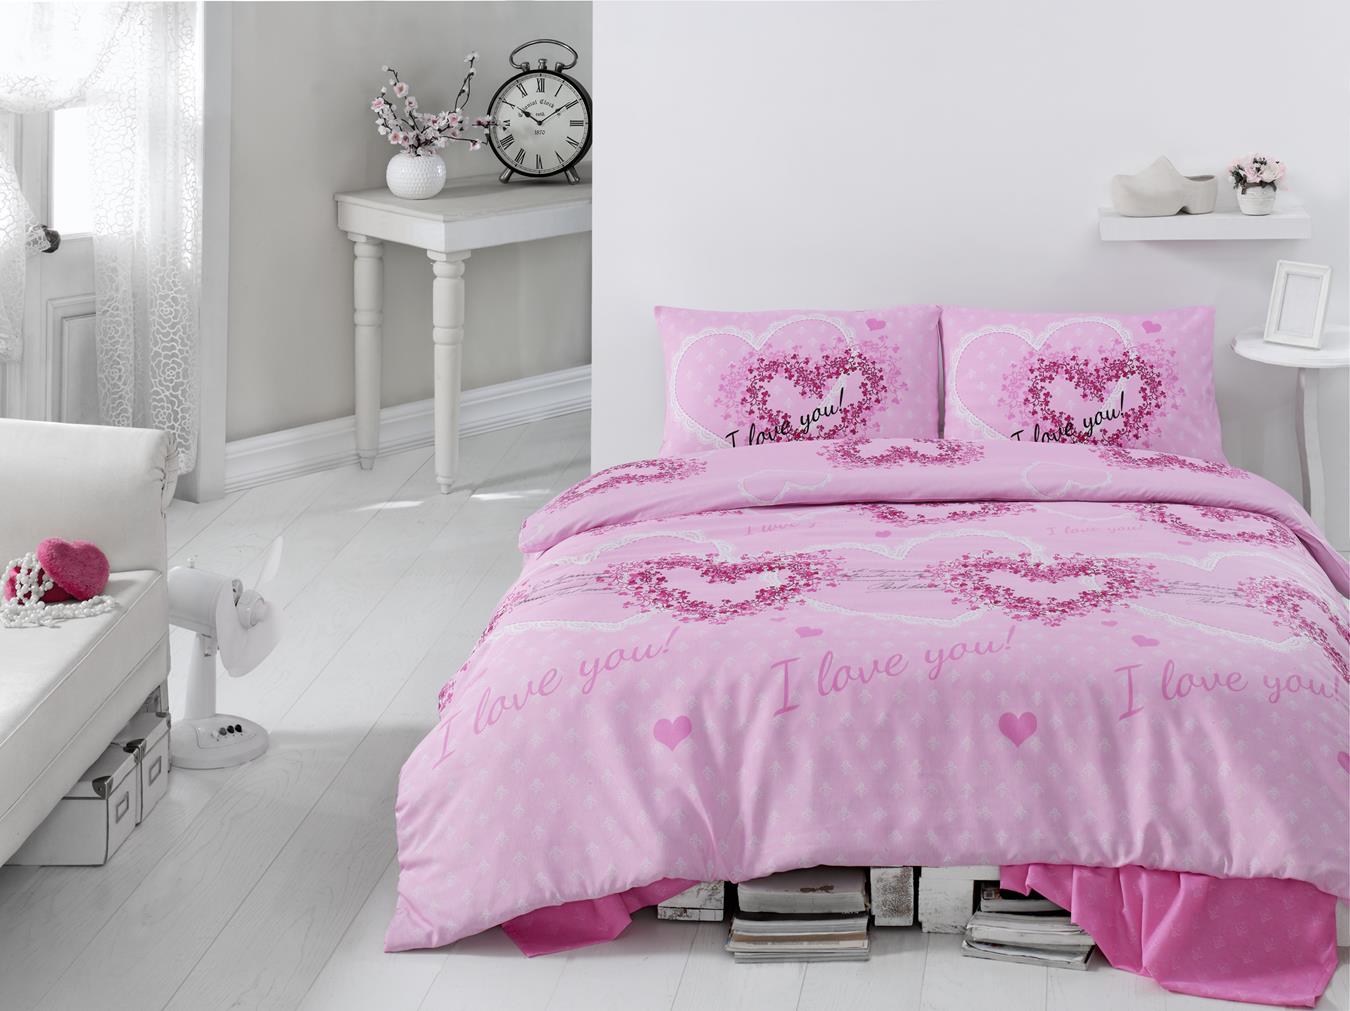 Комплект постельного белья Eponj Home Sueno Pembe, ранфорс, евростандарт, розовый, 4 предмета (7305) - фото 1